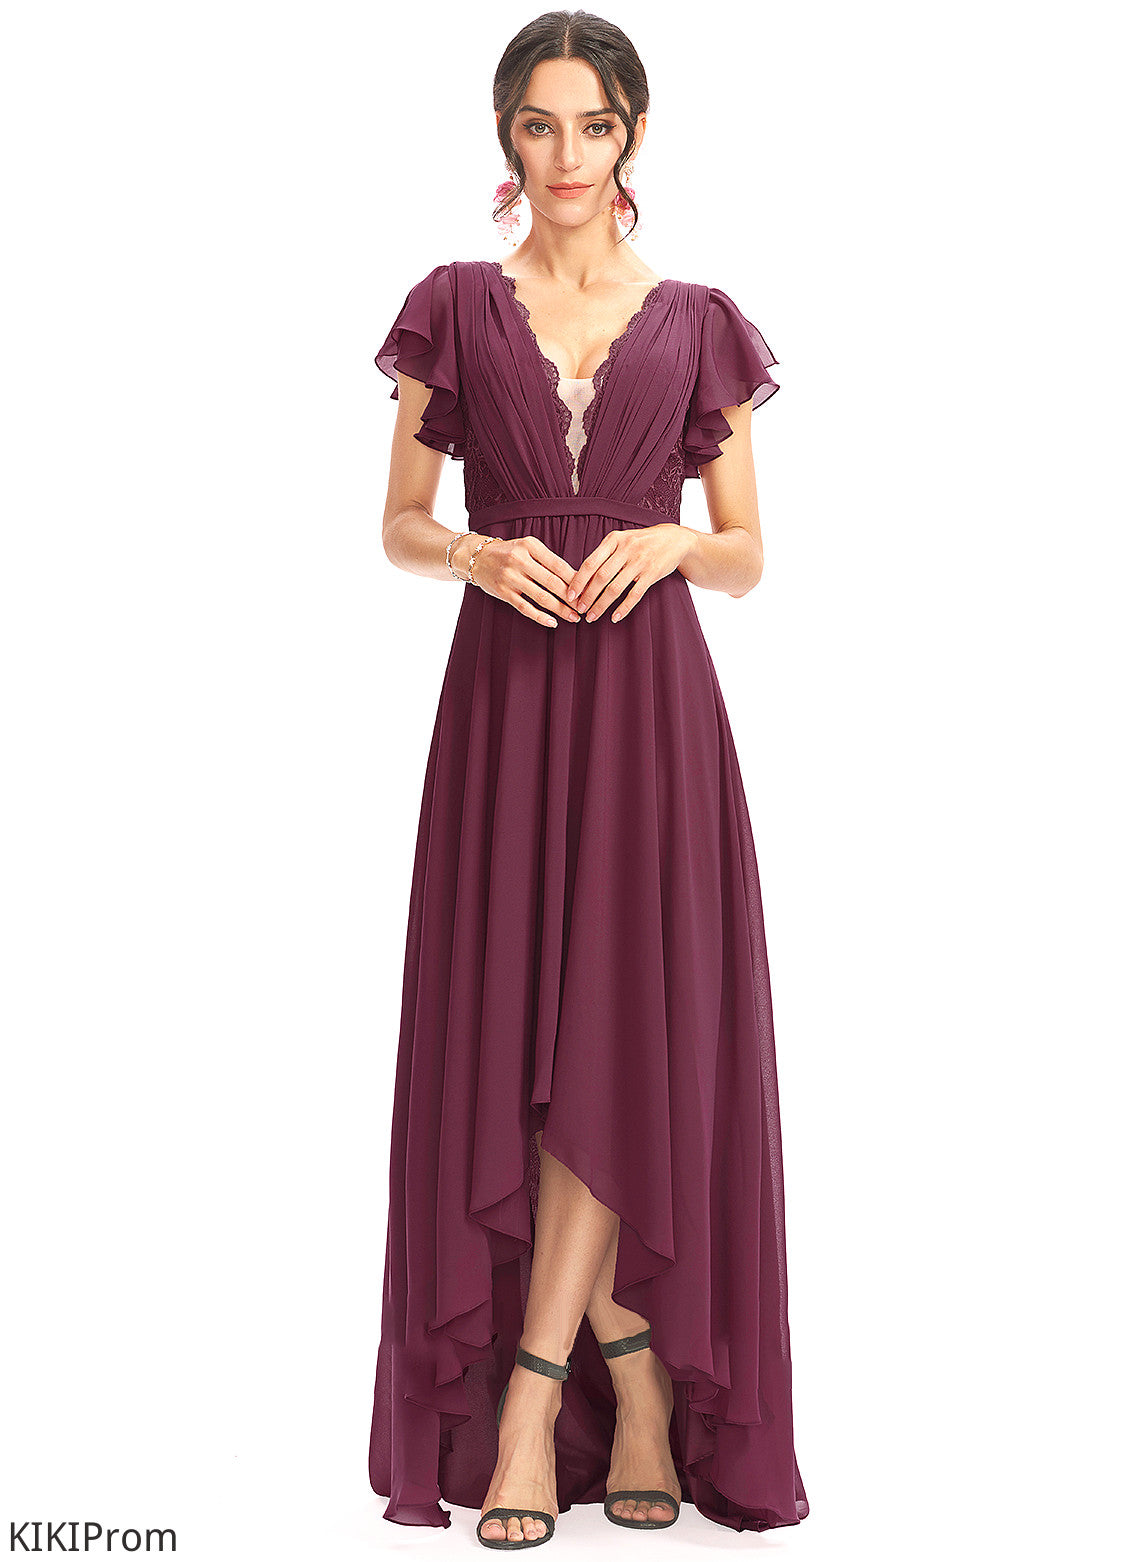 Fabric Silhouette Length Neckline A-Line Embellishment Lace CascadingRuffles Asymmetrical V-neck Autumn Bridesmaid Dresses